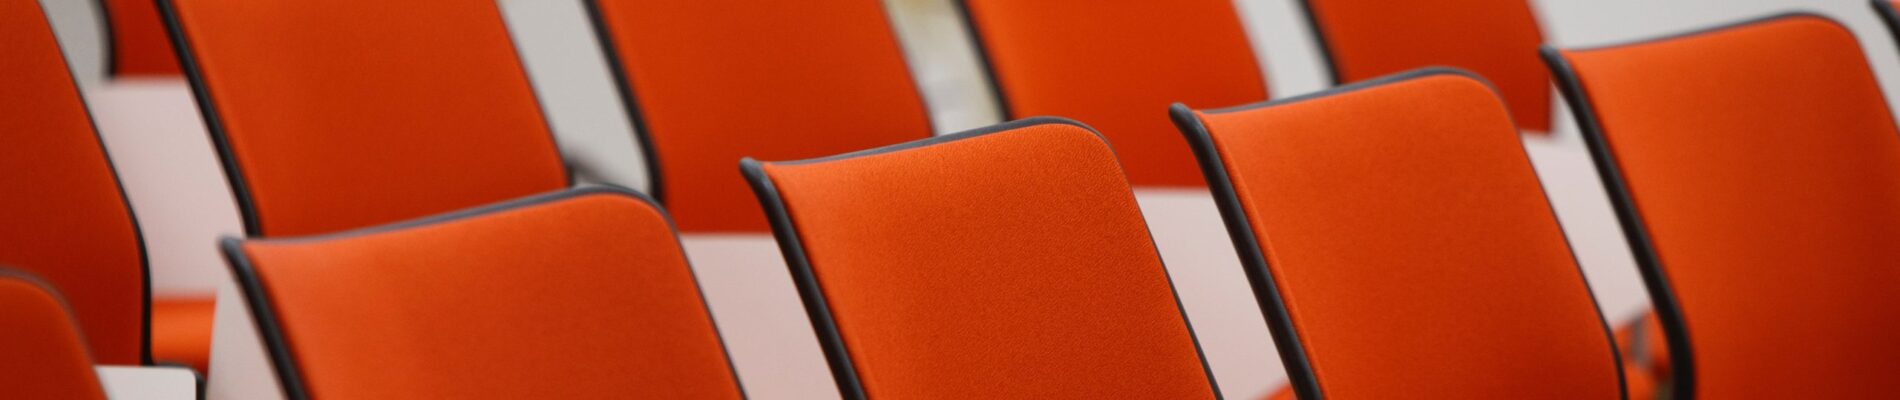 Une rangée de chaises oranges.